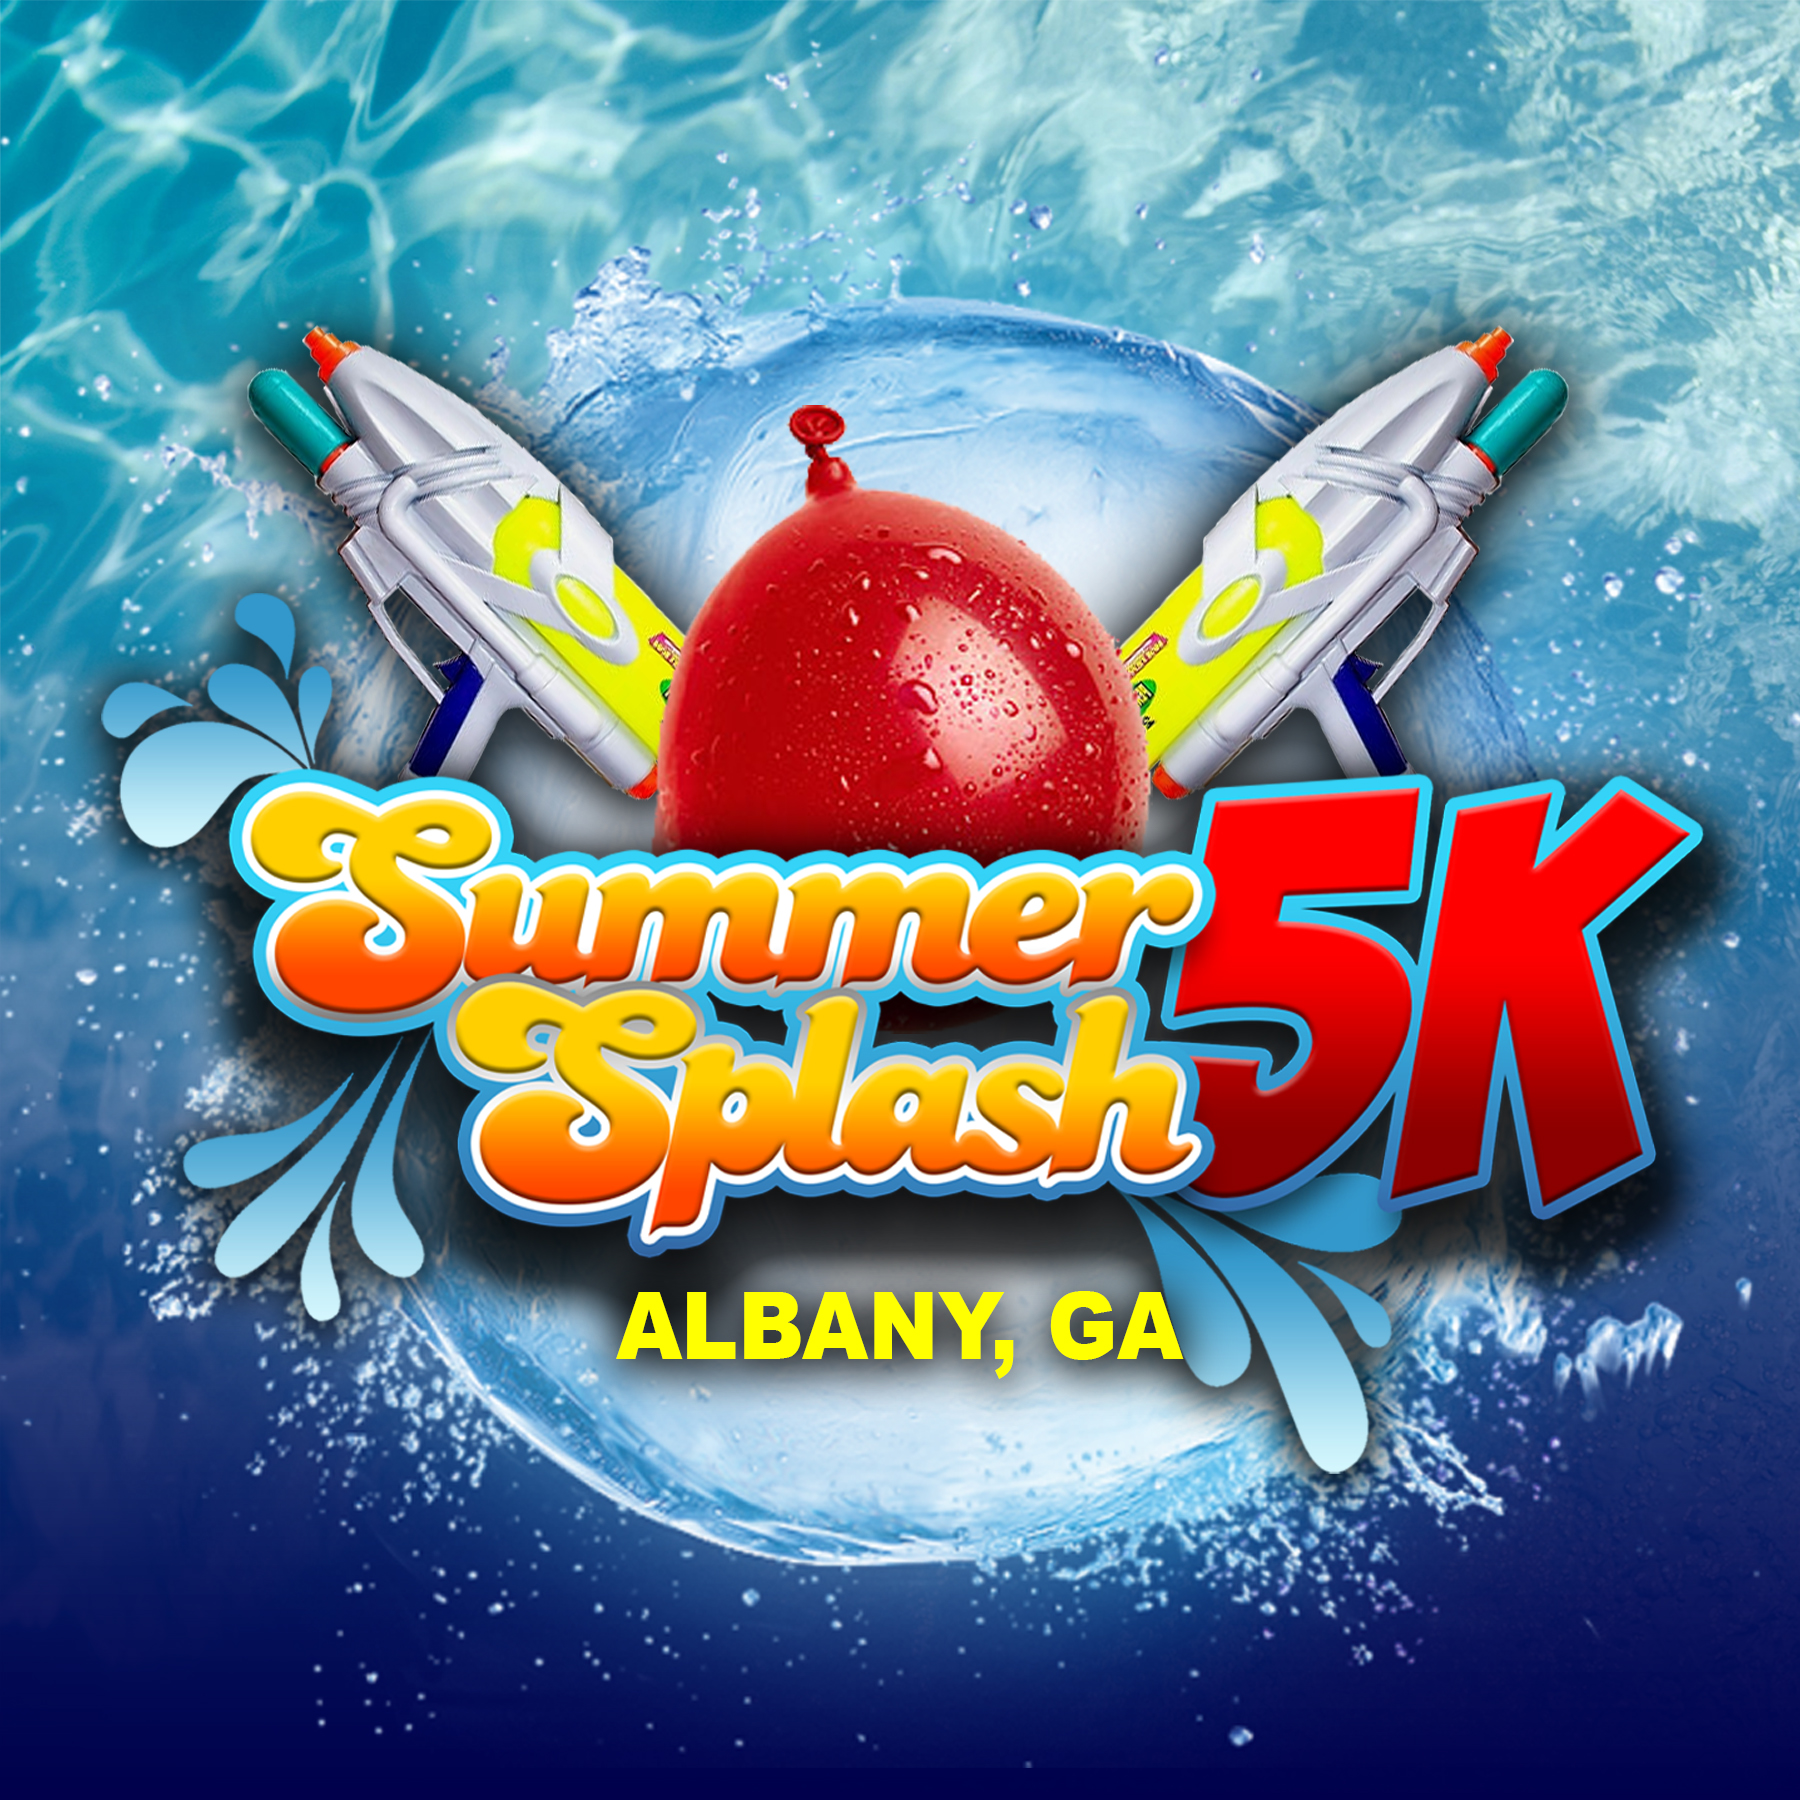 Summer Splash 5K logo on RaceRaves